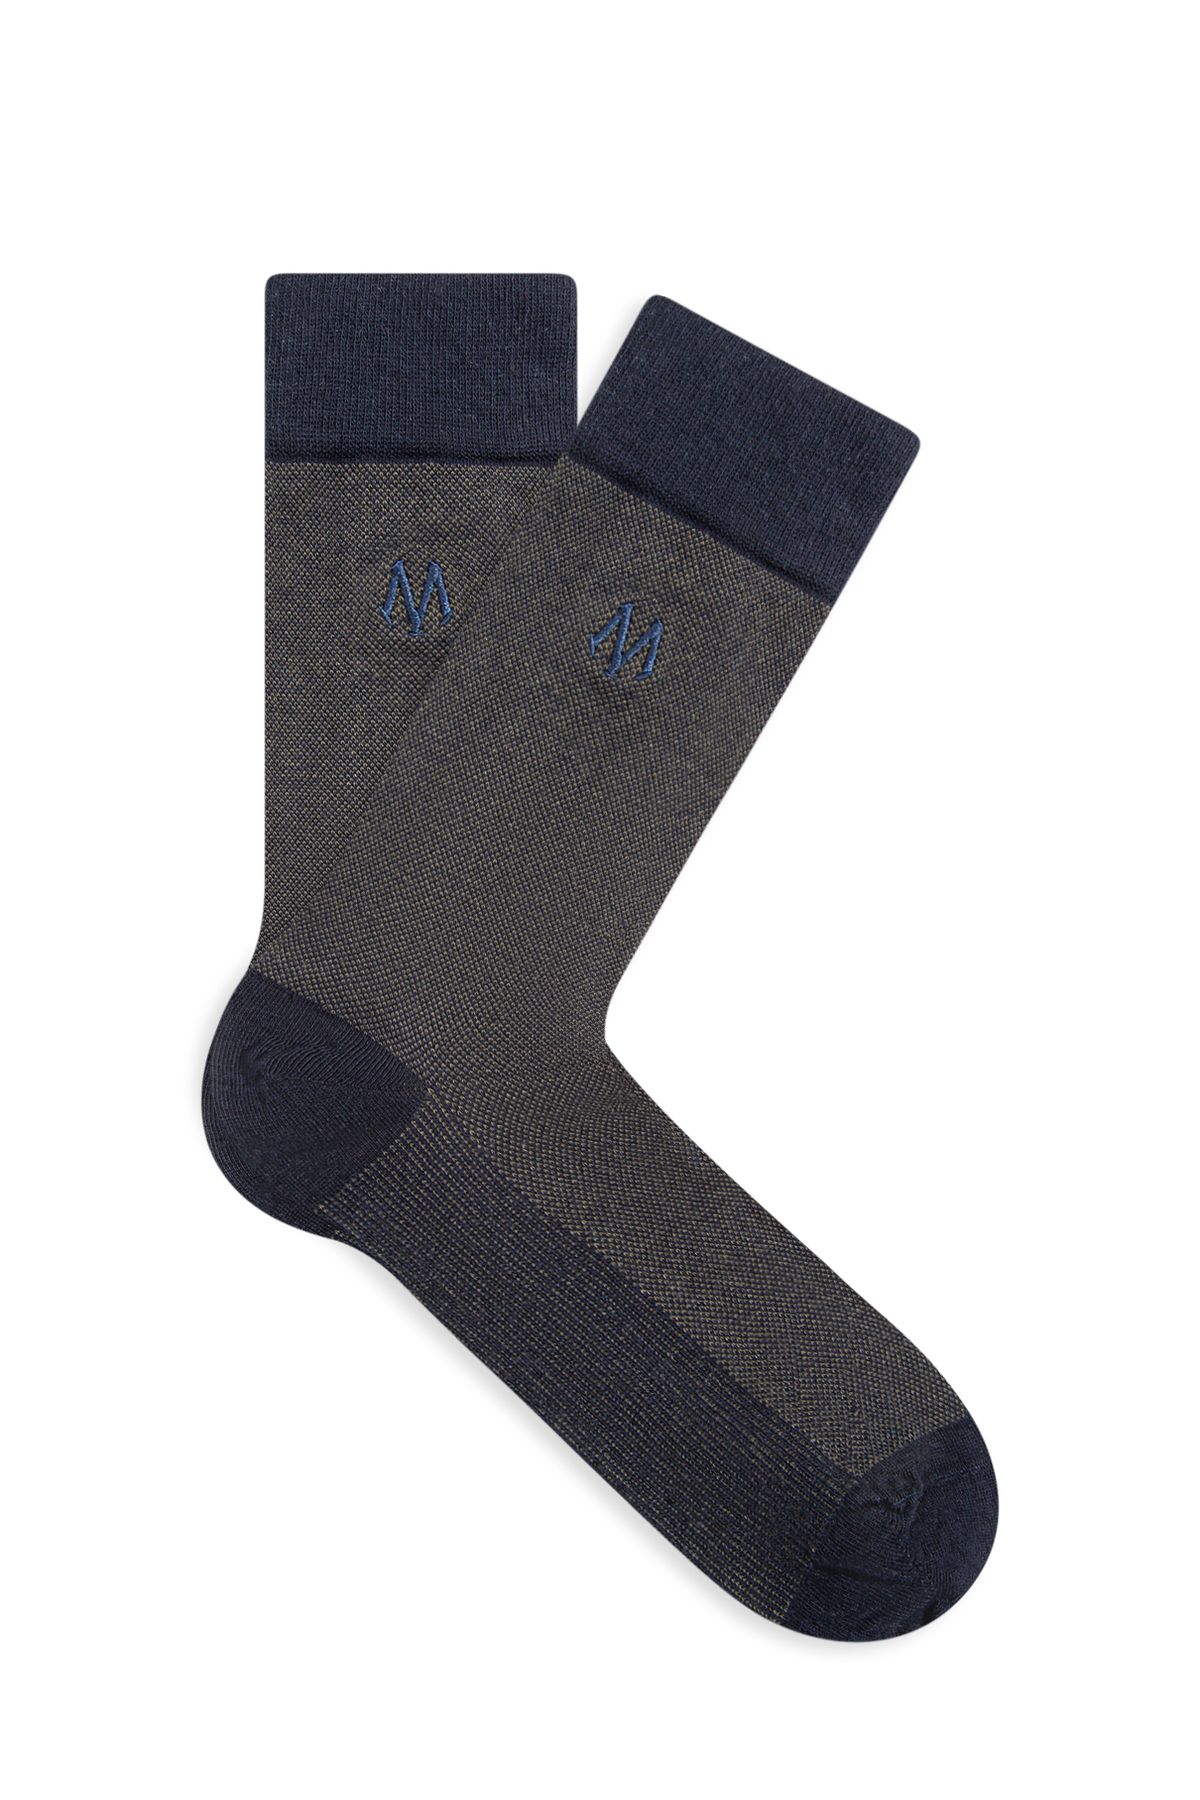 Mavi Baskılı Lacivert Soket Çorap 091760-28725